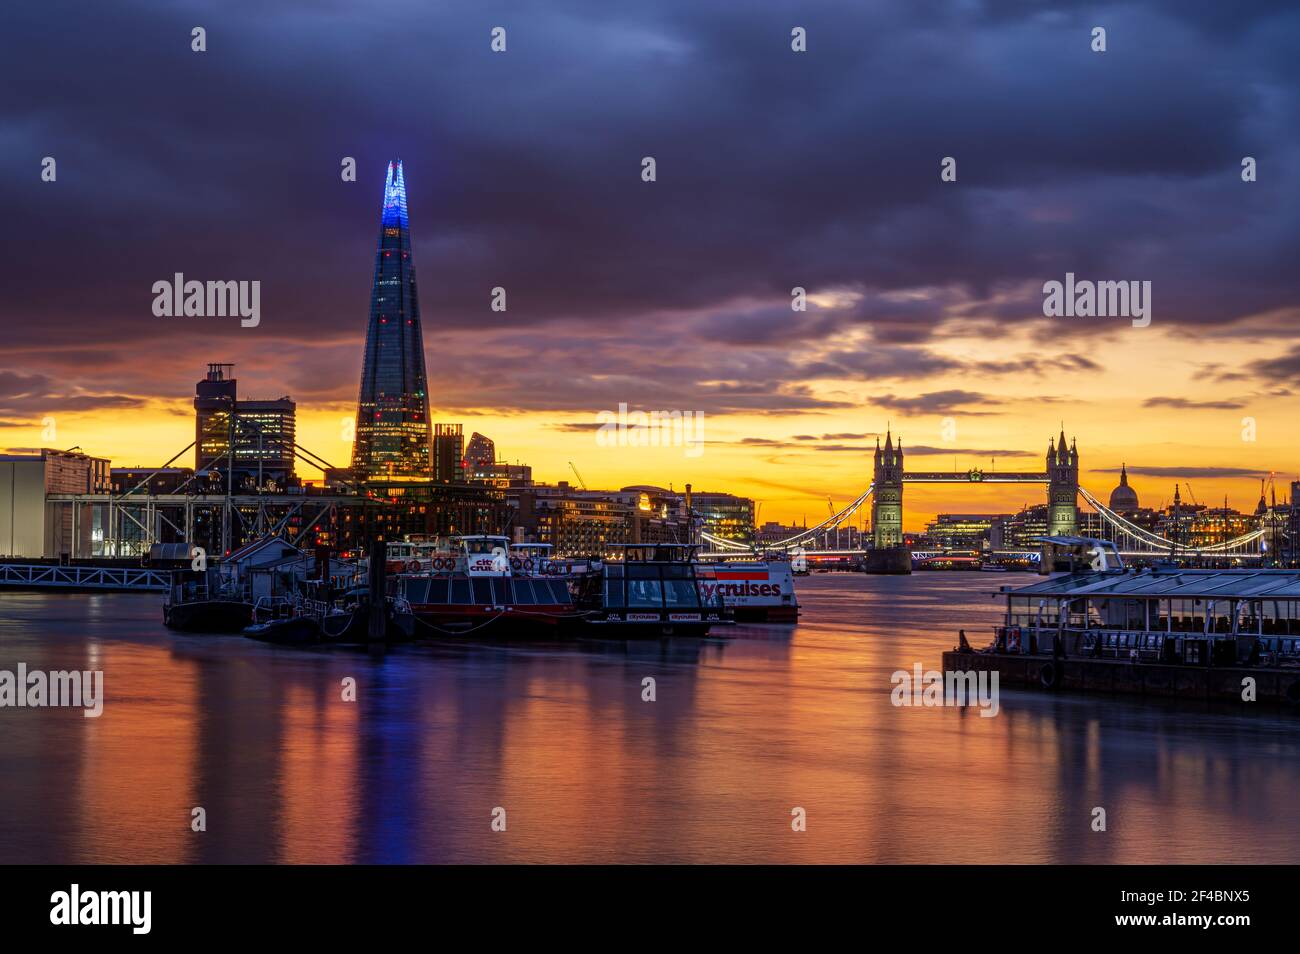 Londres, Angleterre, Royaume-Uni - 19 mars 2021 : vue panoramique de la ville de Londres avec un coucher de soleil coloré reflété dans la Tamise Banque D'Images